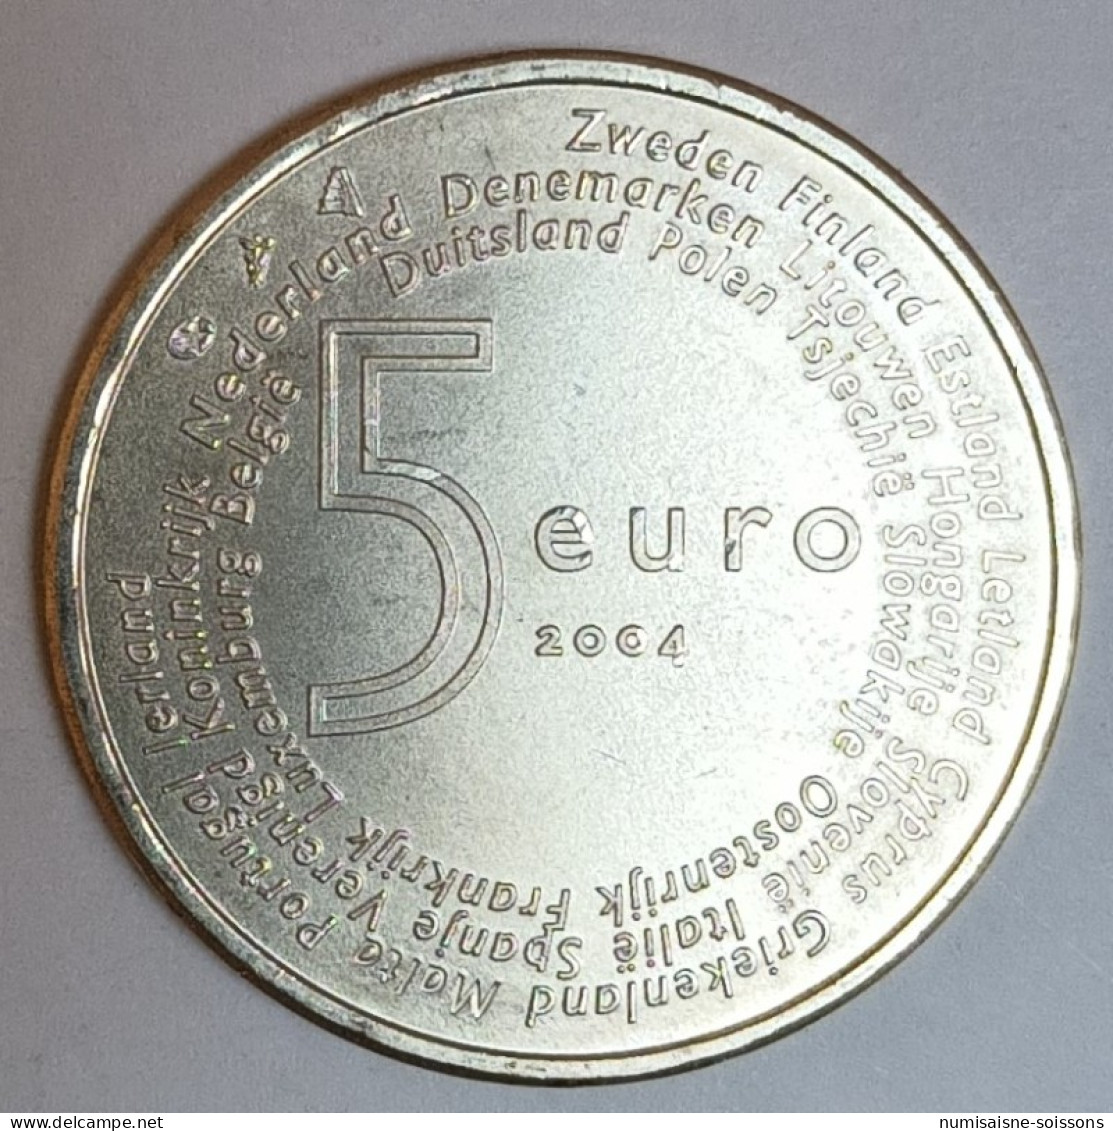 PAYS BAS - KM 252 - 5 EURO 2004 - ELARGISSEMENT DE L'UNION EUROPEENNE - ARGENT - SPL - Netherlands